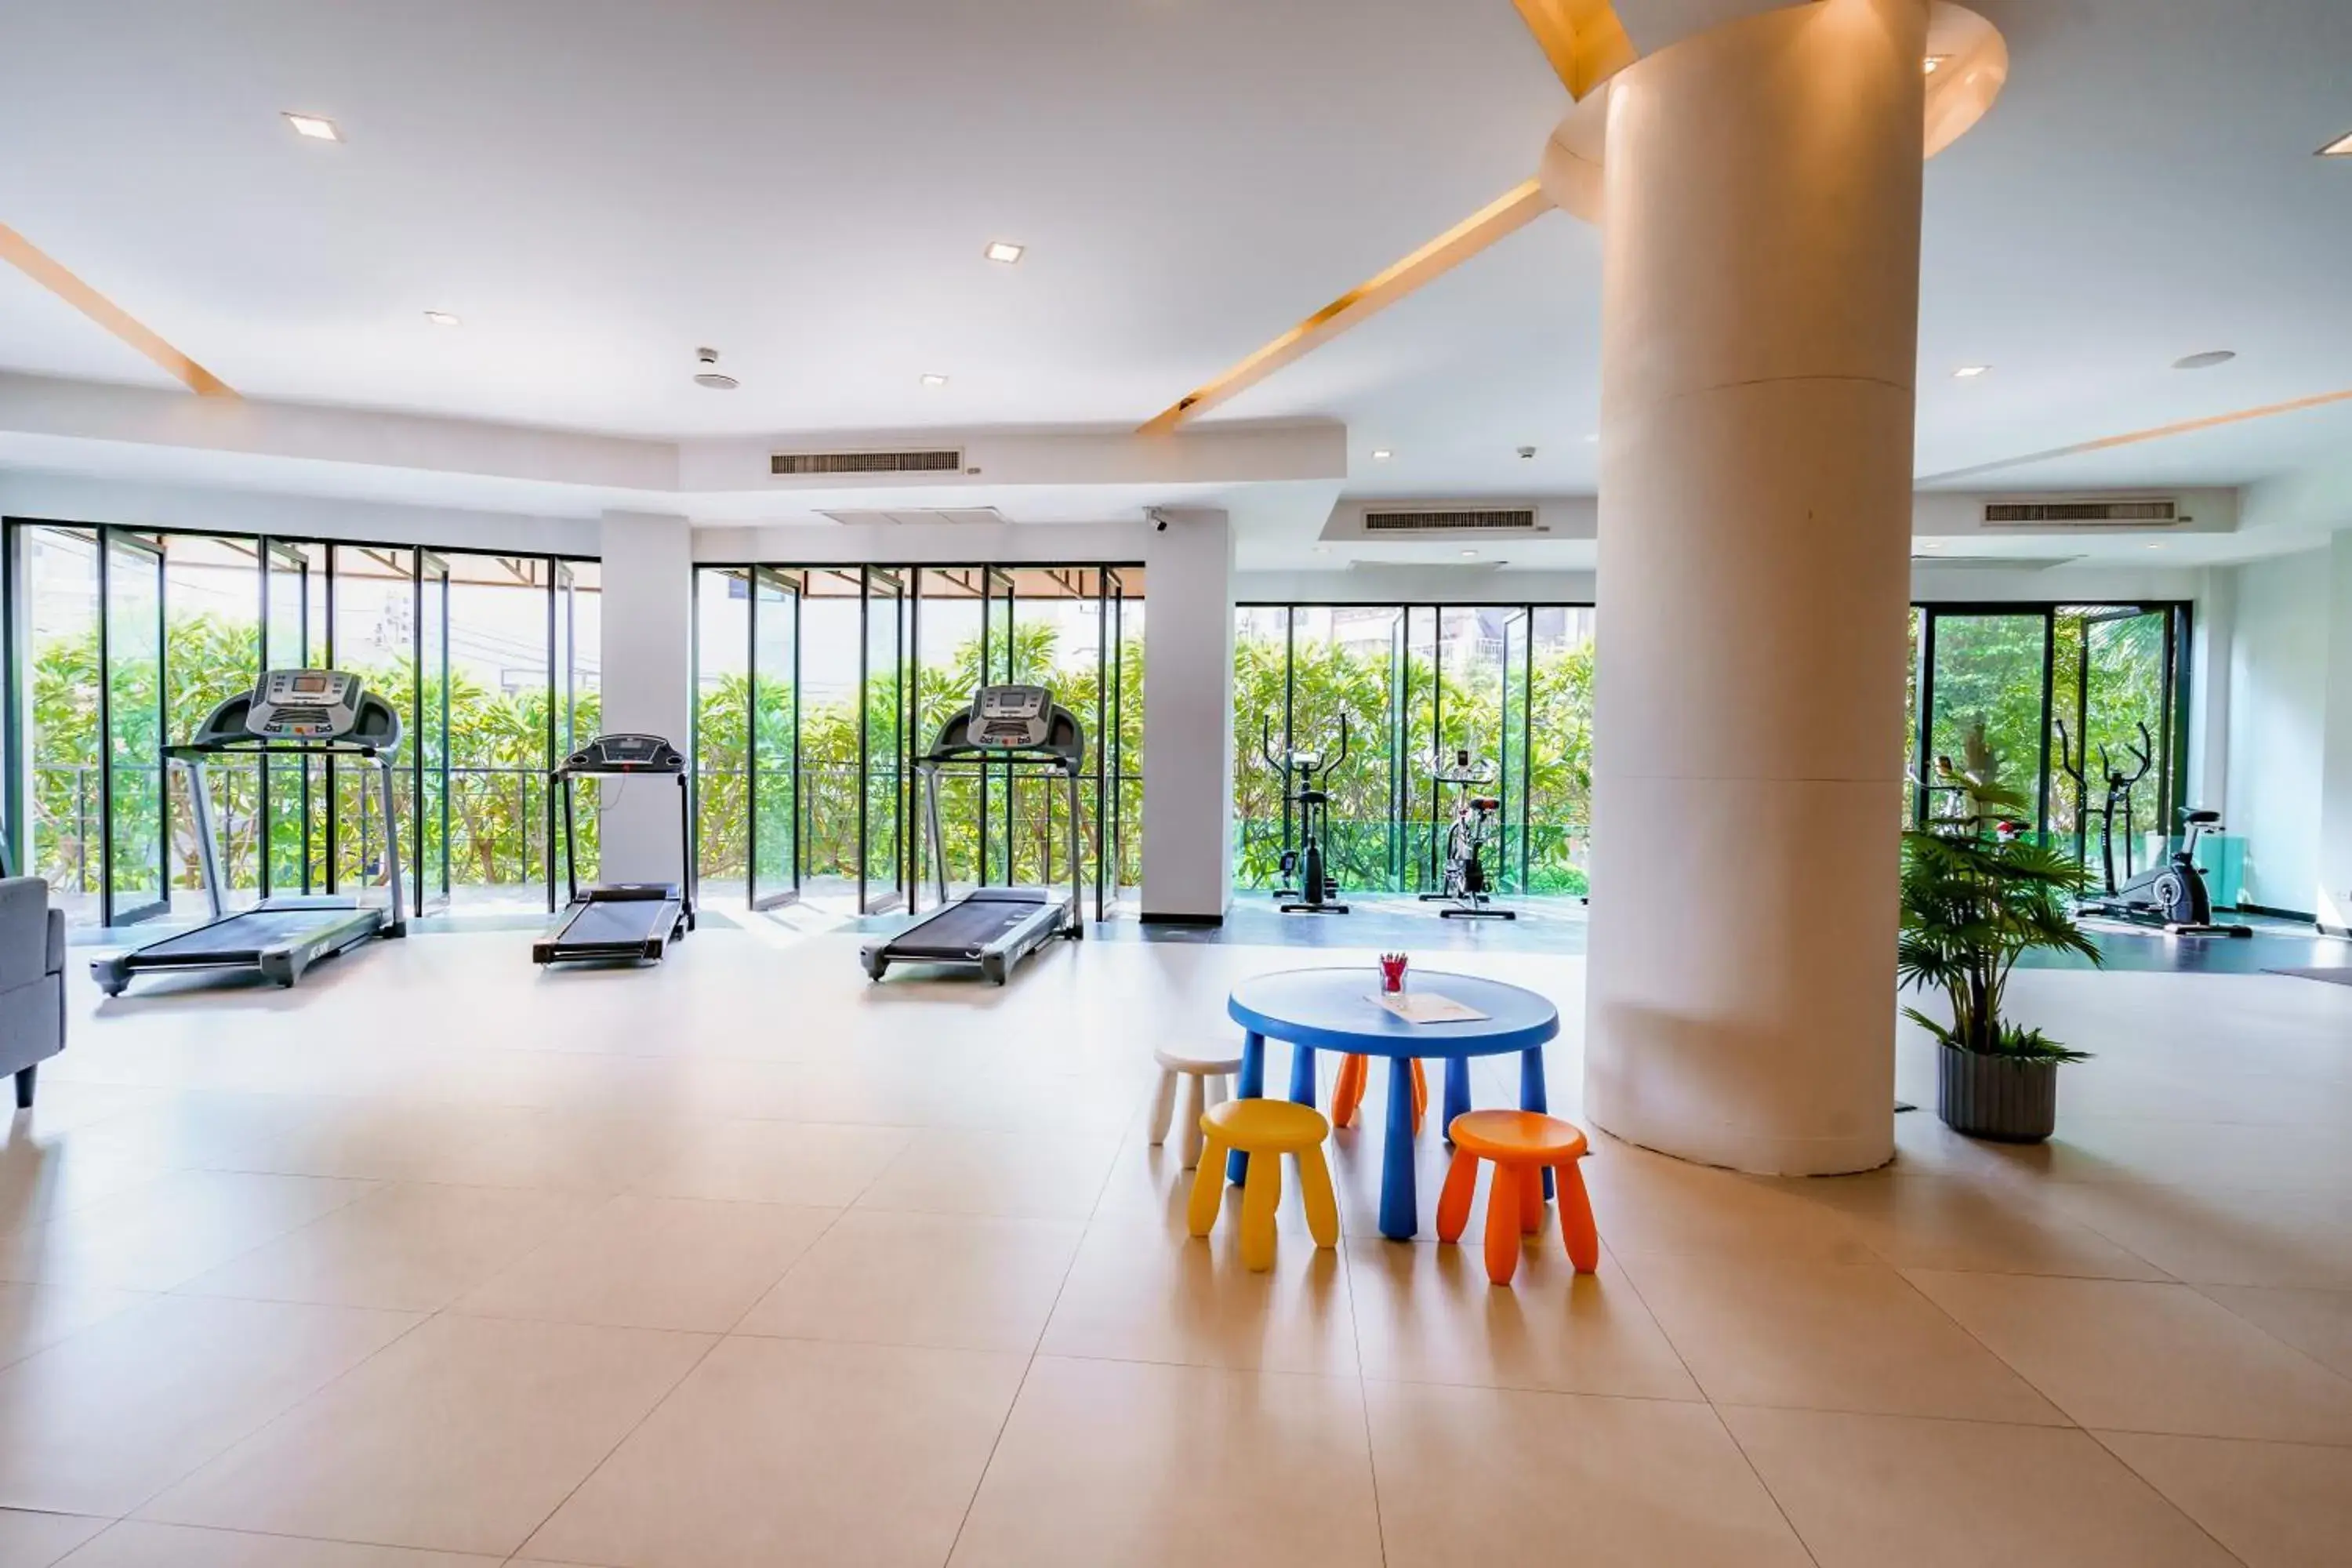 Fitness centre/facilities in Hotel J Pattaya